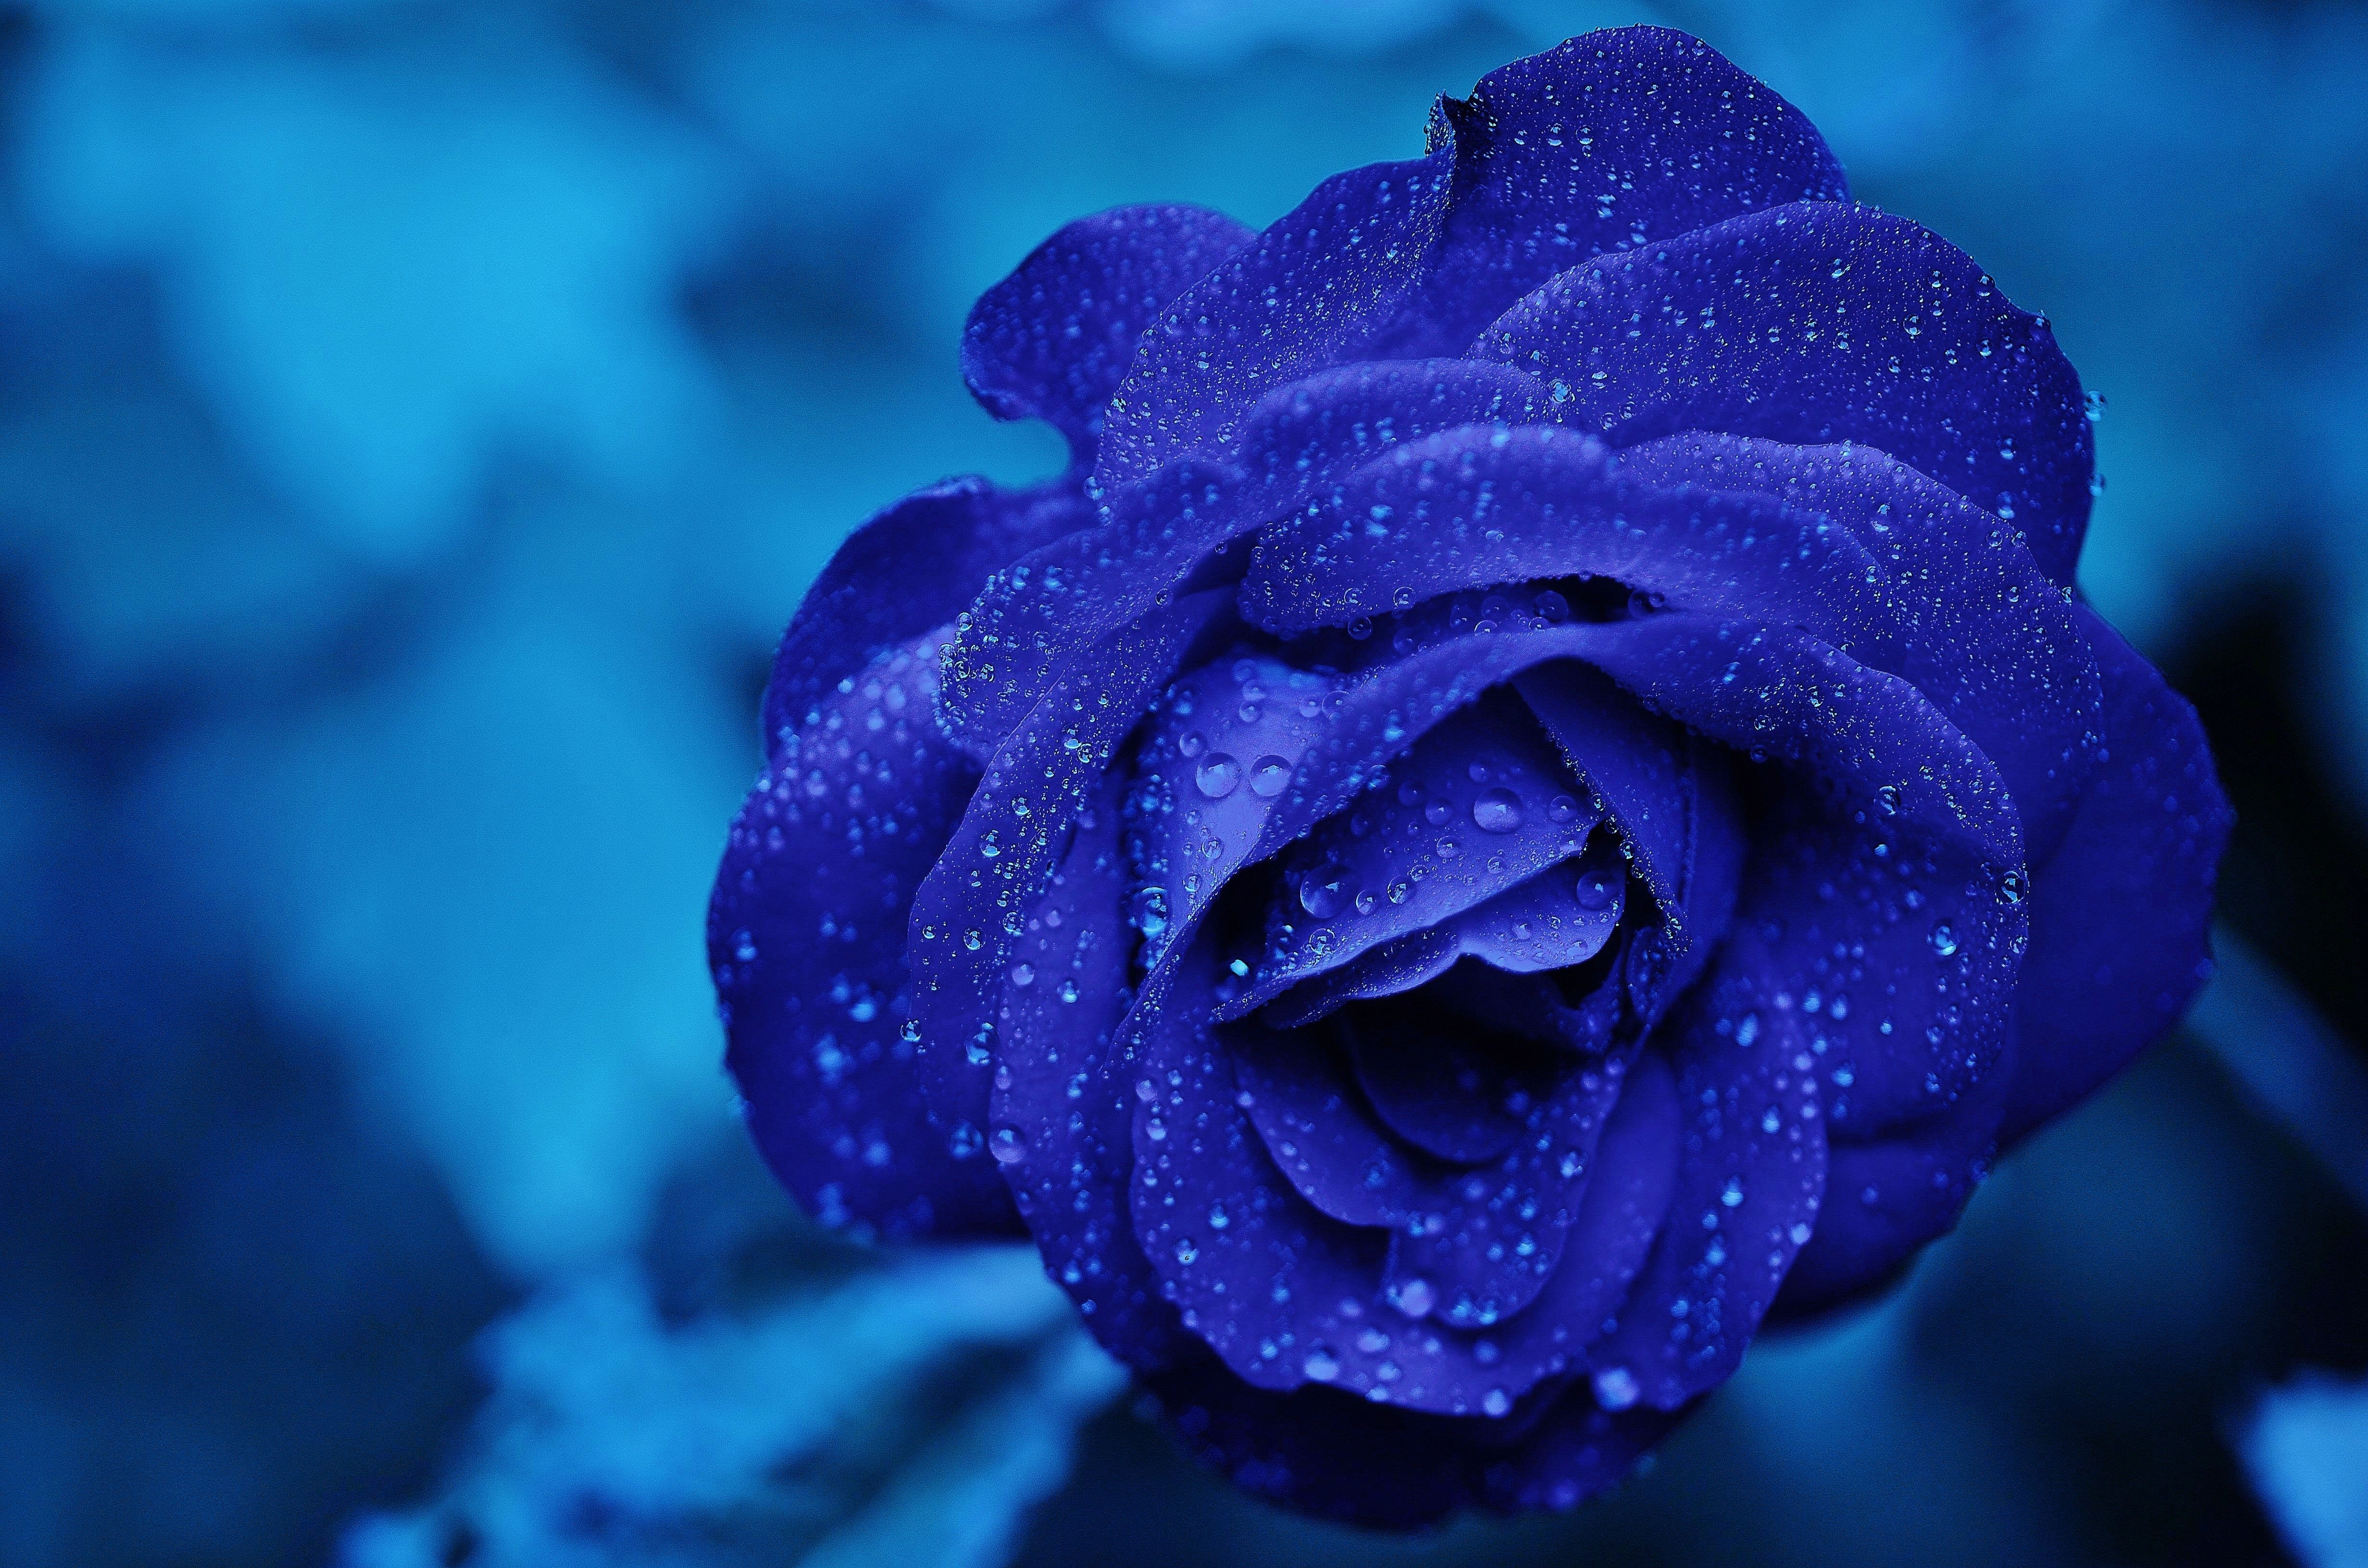 Бесплатное фото Синяя роза с каплями росы на лепестках